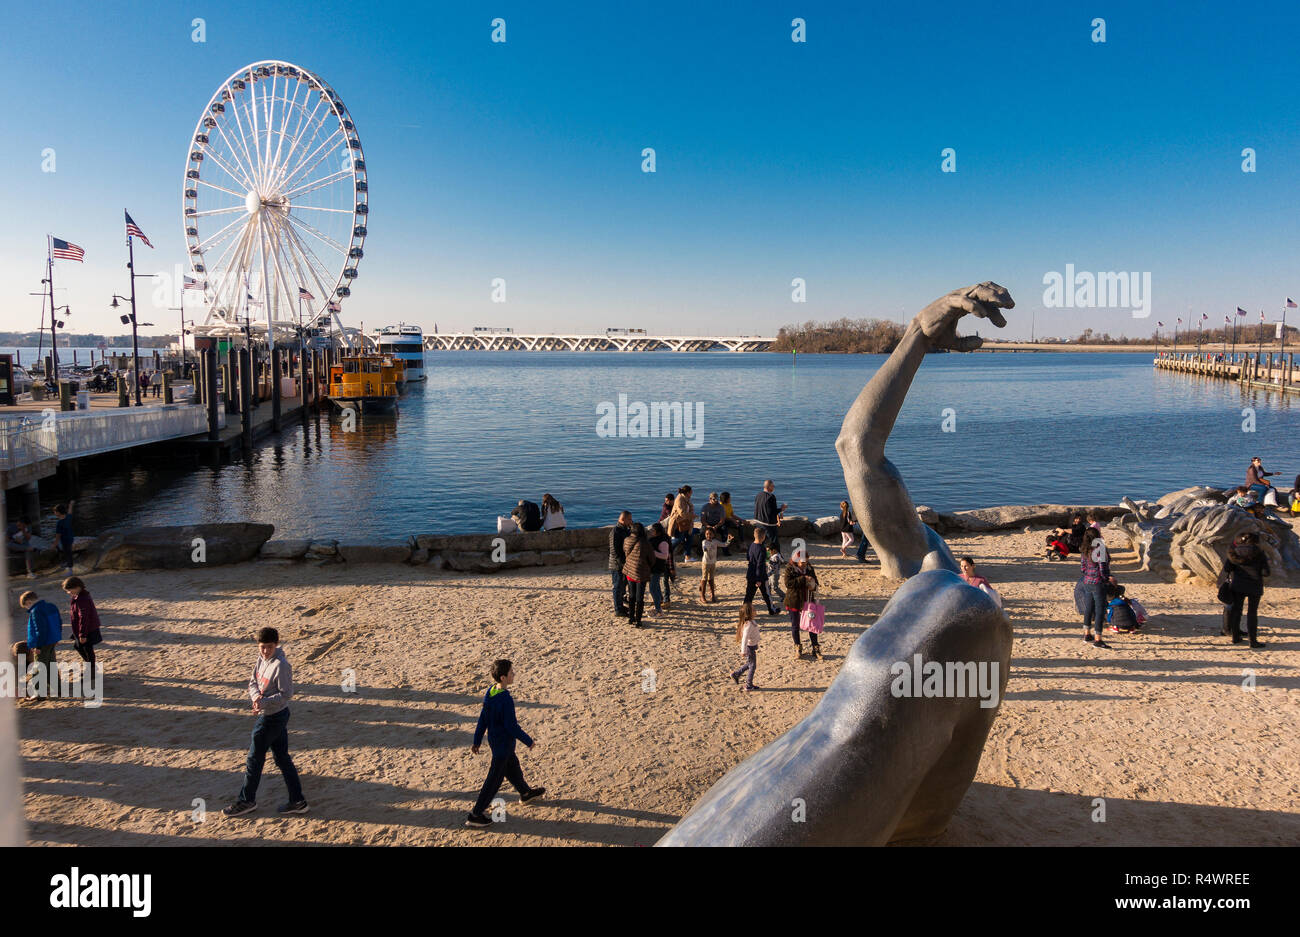 NATIONAL Harbor, Maryland, USA - Das Erwachen Skulptur und die Leute am Strand, mit Hauptstadt Rad Fahrgeschäft auf der linken Seite. Stockfoto